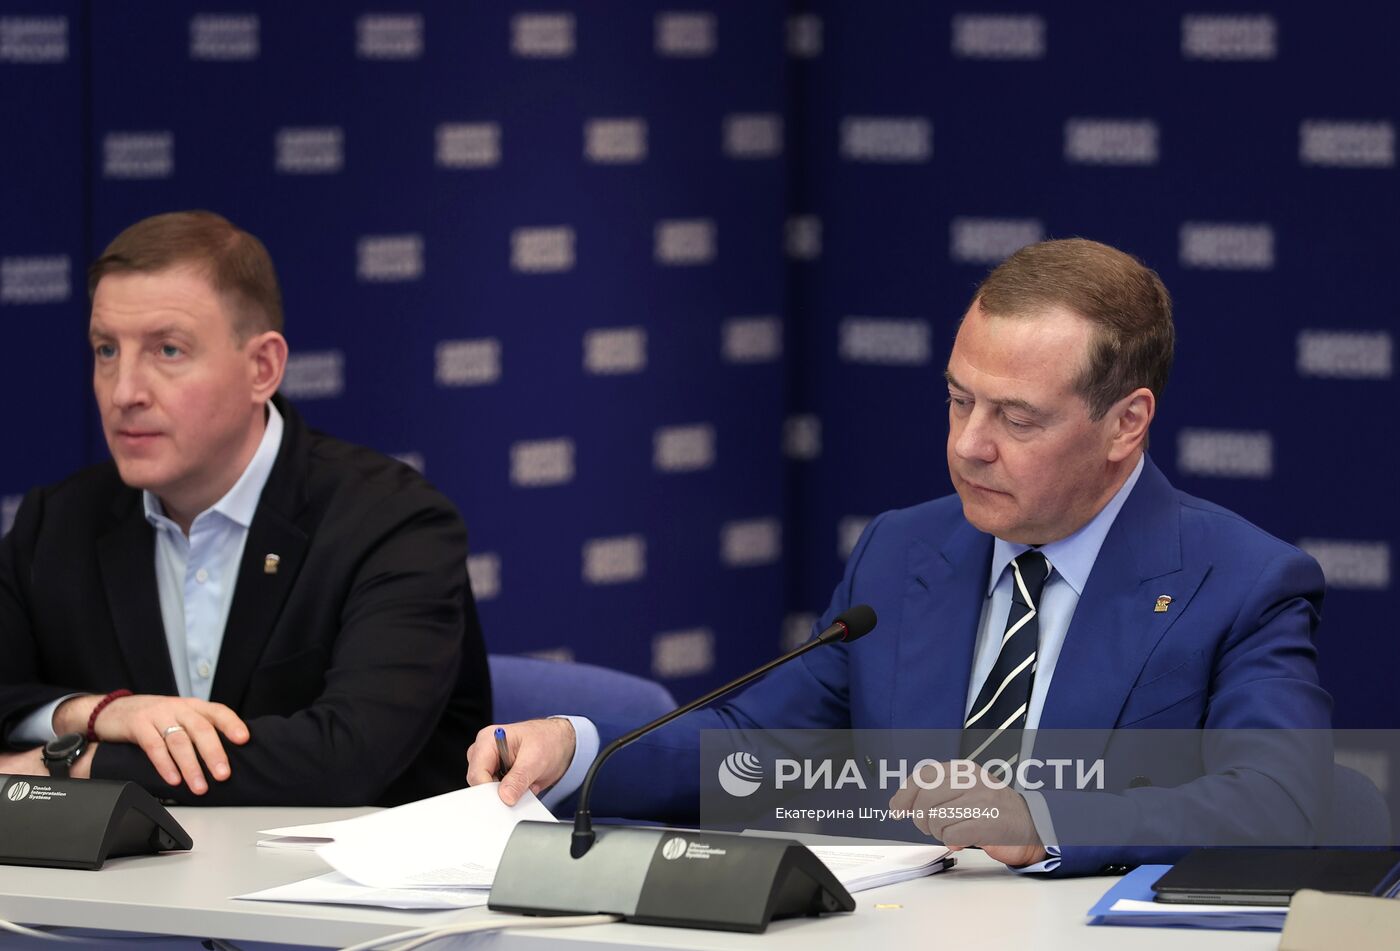 Председатель партии "Единая Россия", зампред Совбеза РФ Д. Медведев провел заседание бюро высшего совета партии